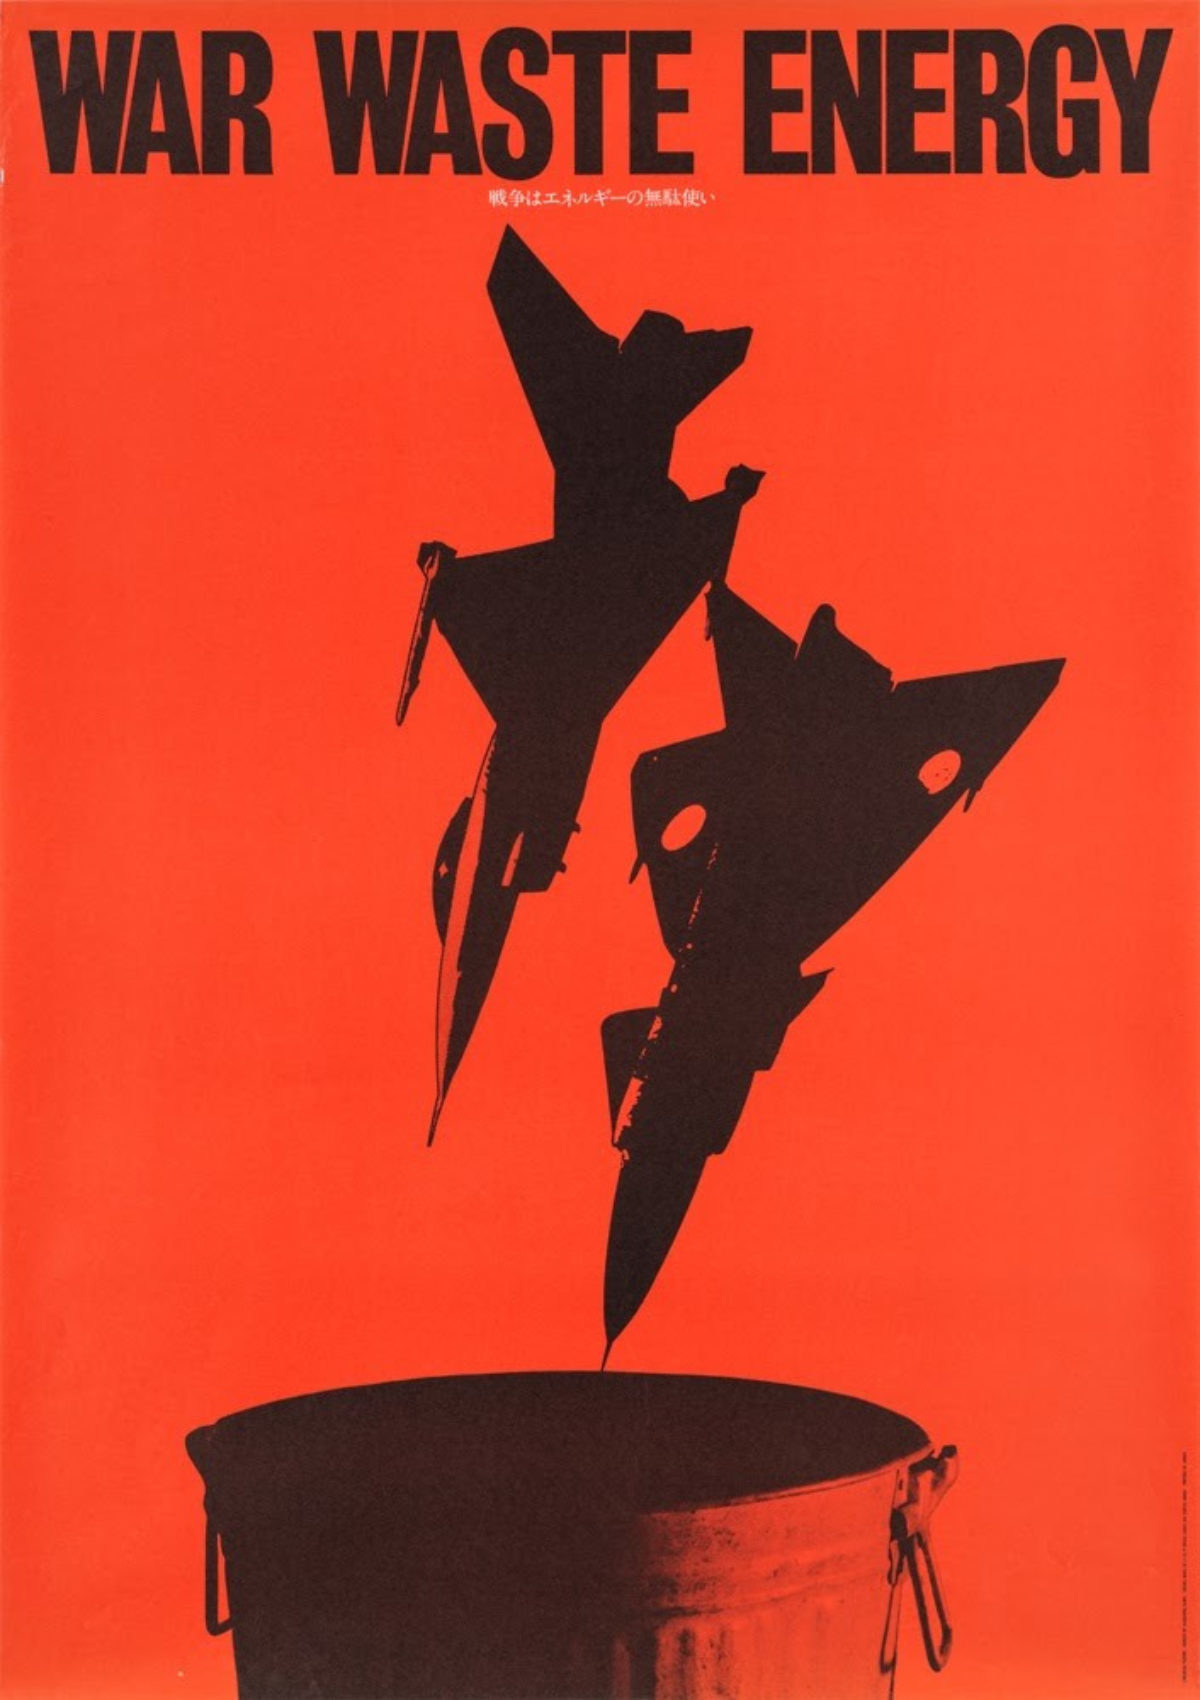 “War waste energy”, cartaz de 1981 do artista japonês Masuteru Aoba contra conflitos armados.